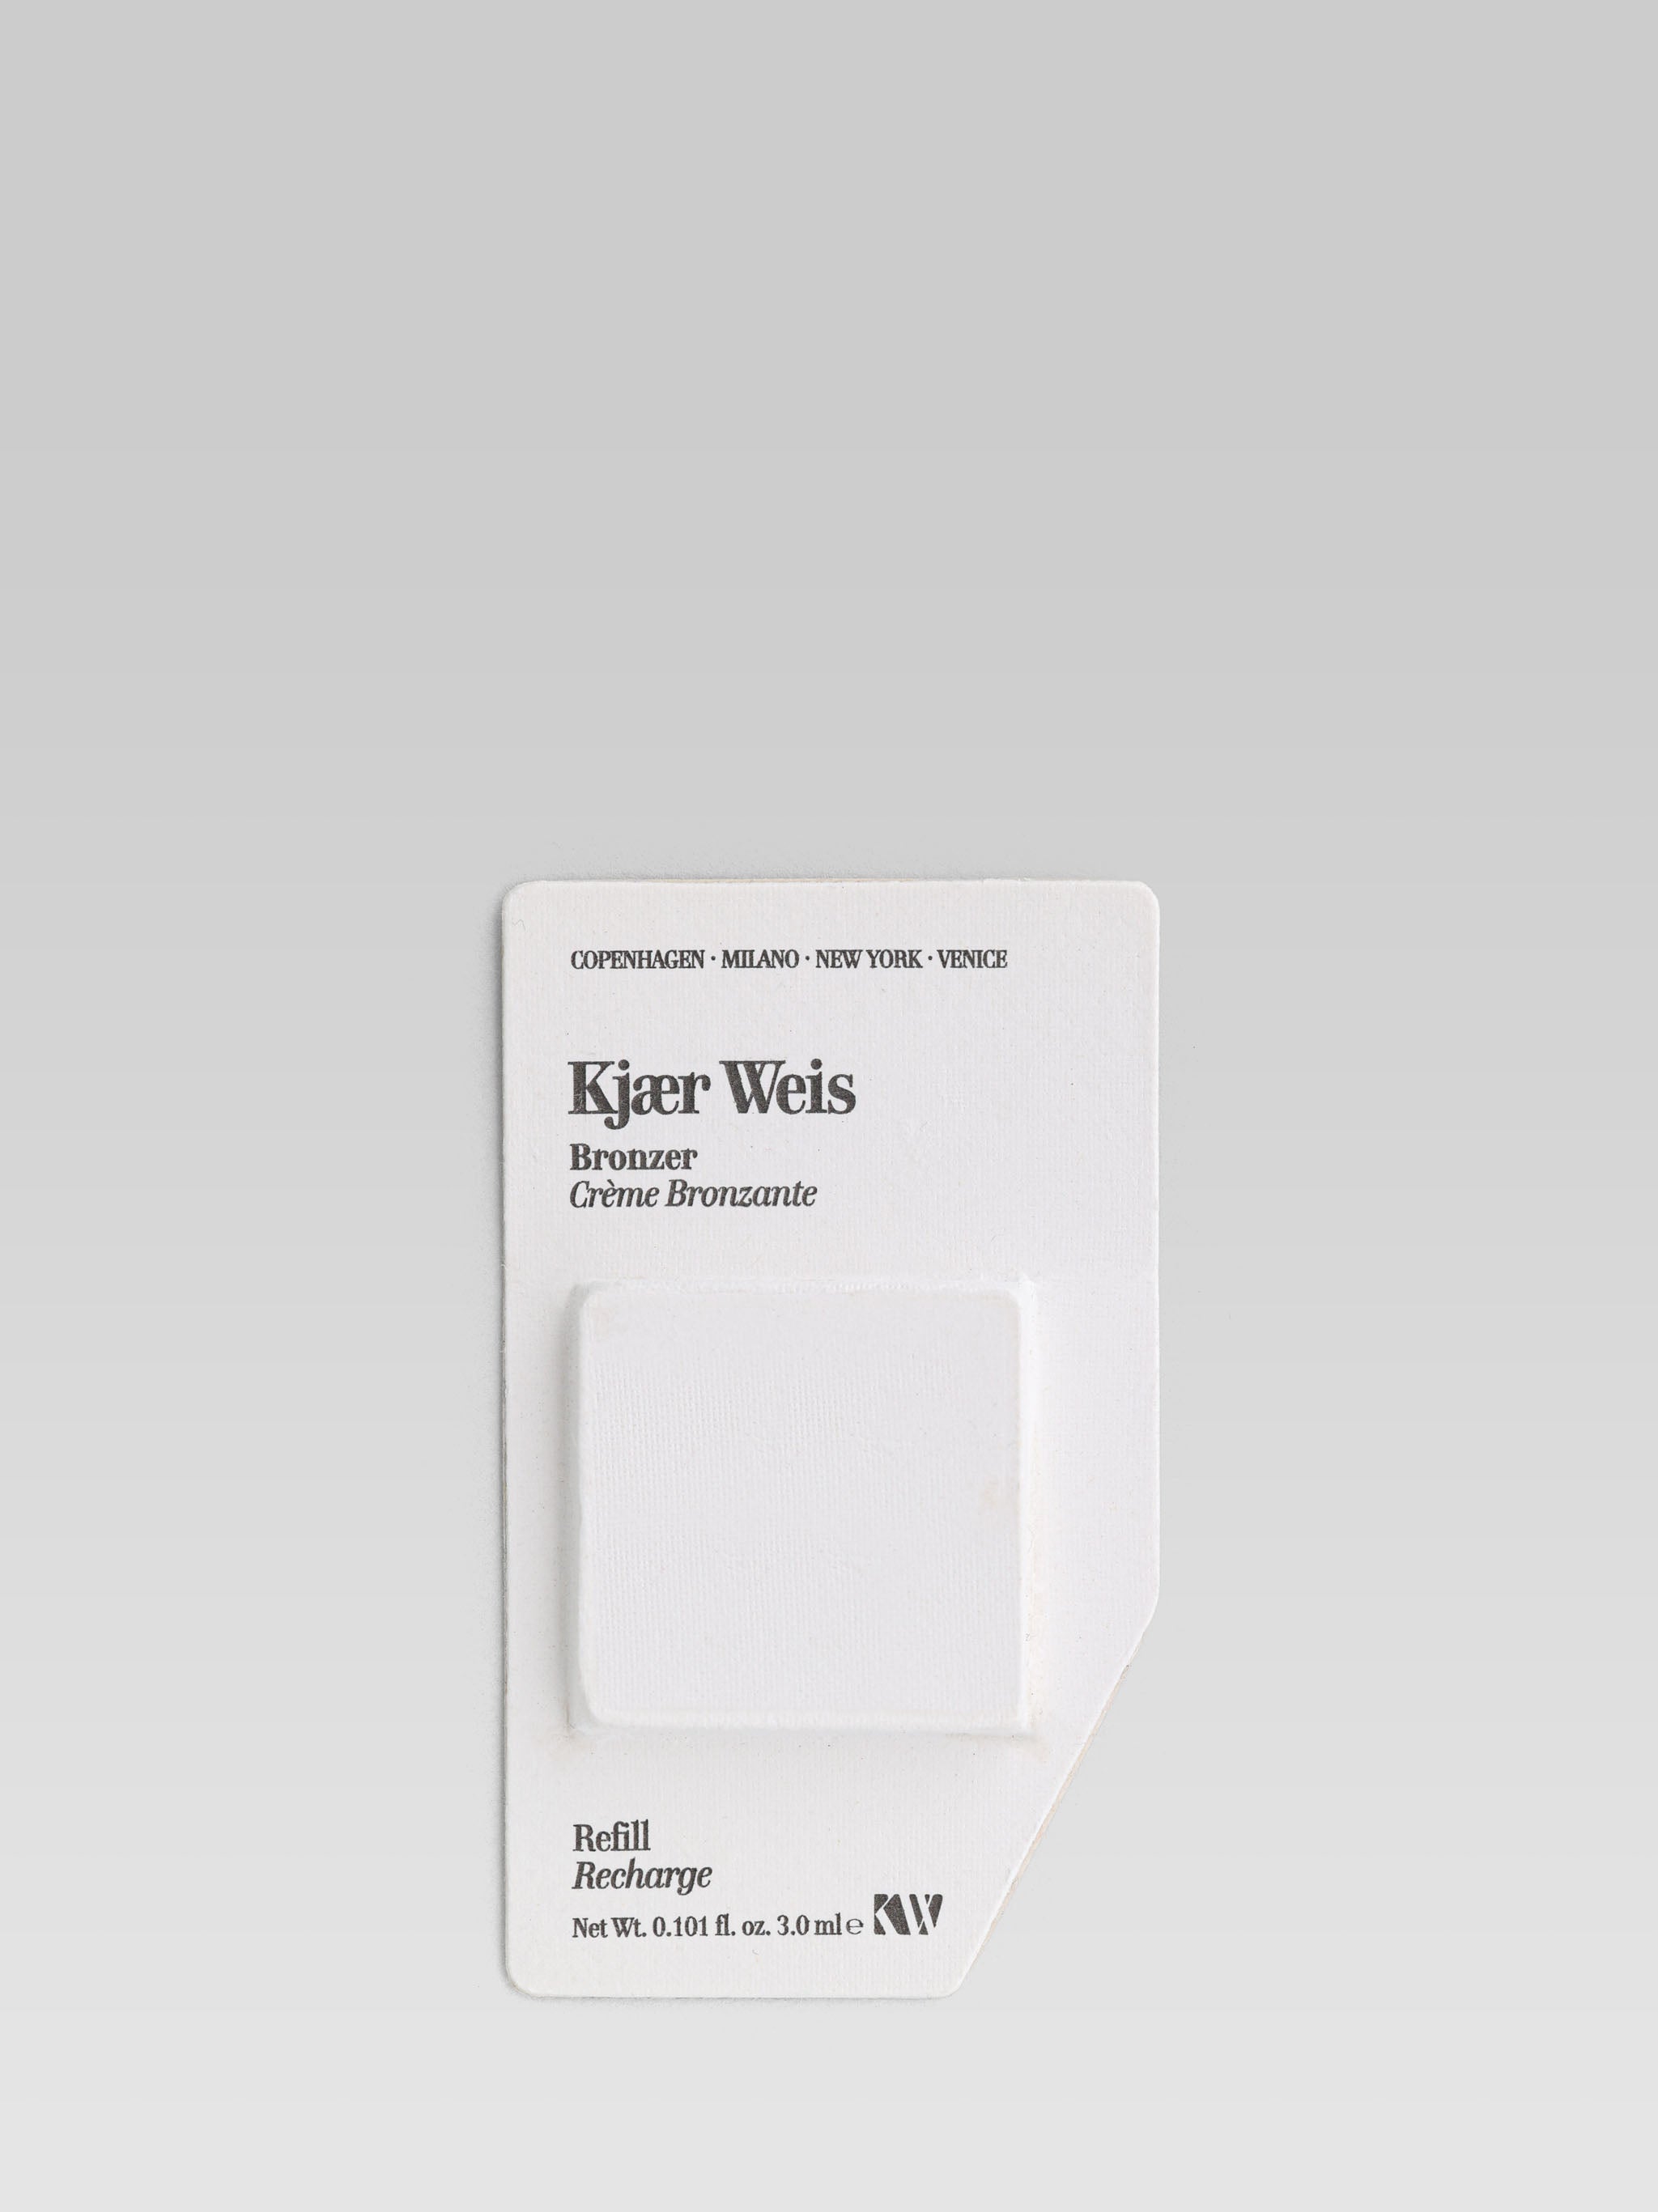 Kjaer Weis Bronzer Refill product shot